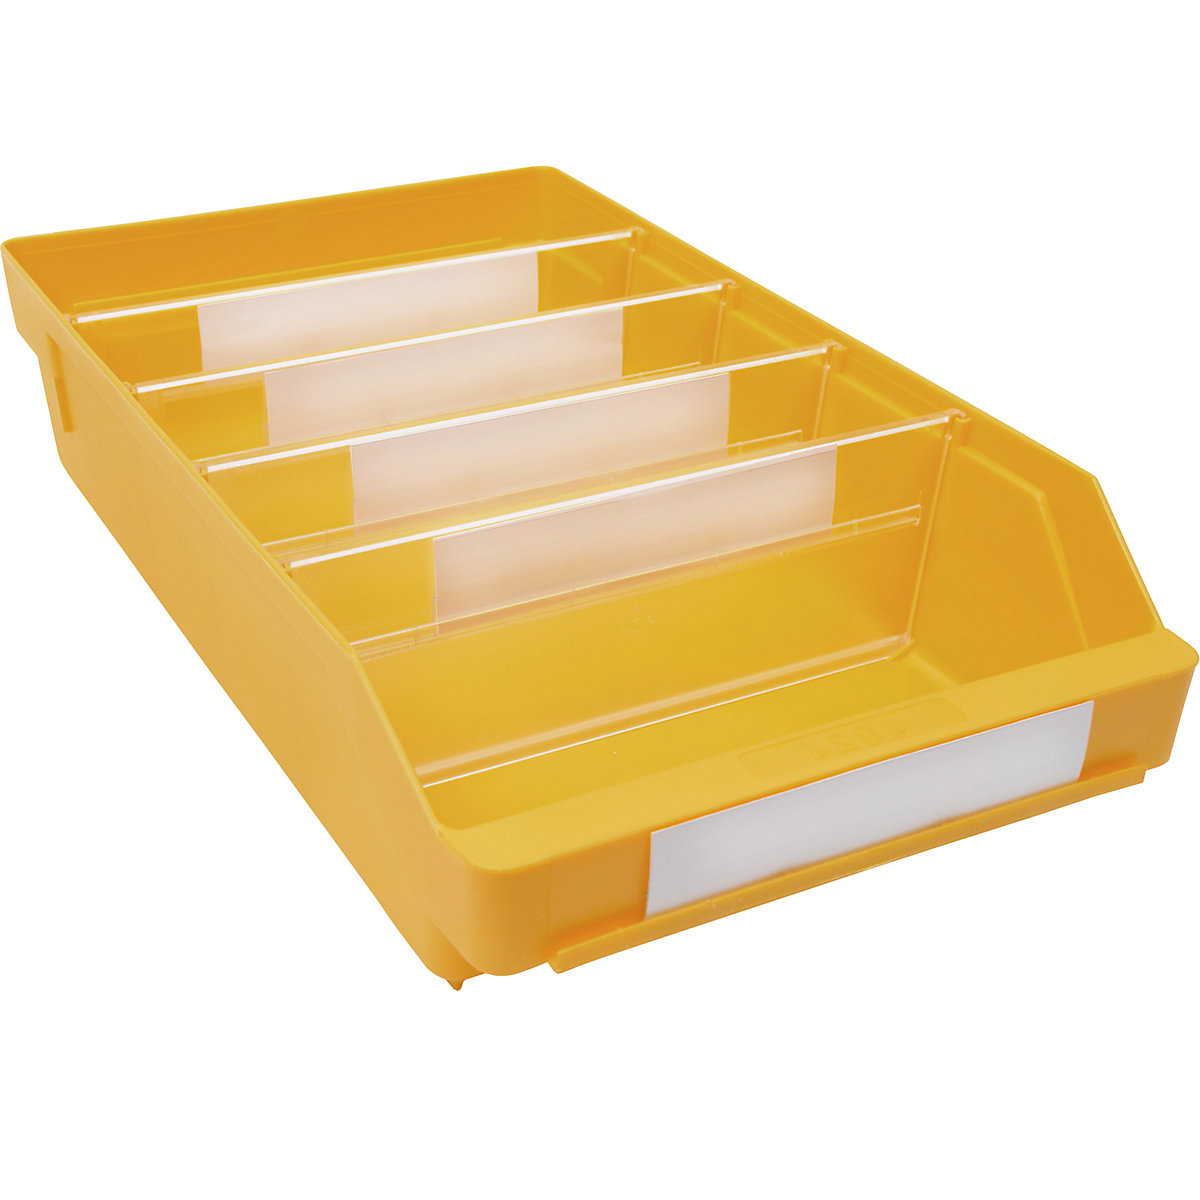 Regalkasten aus hochschlagfestem Polypropylen STEMO, gelb, LxBxH 400 x 240 x 95 mm, VE 15 Stk-7